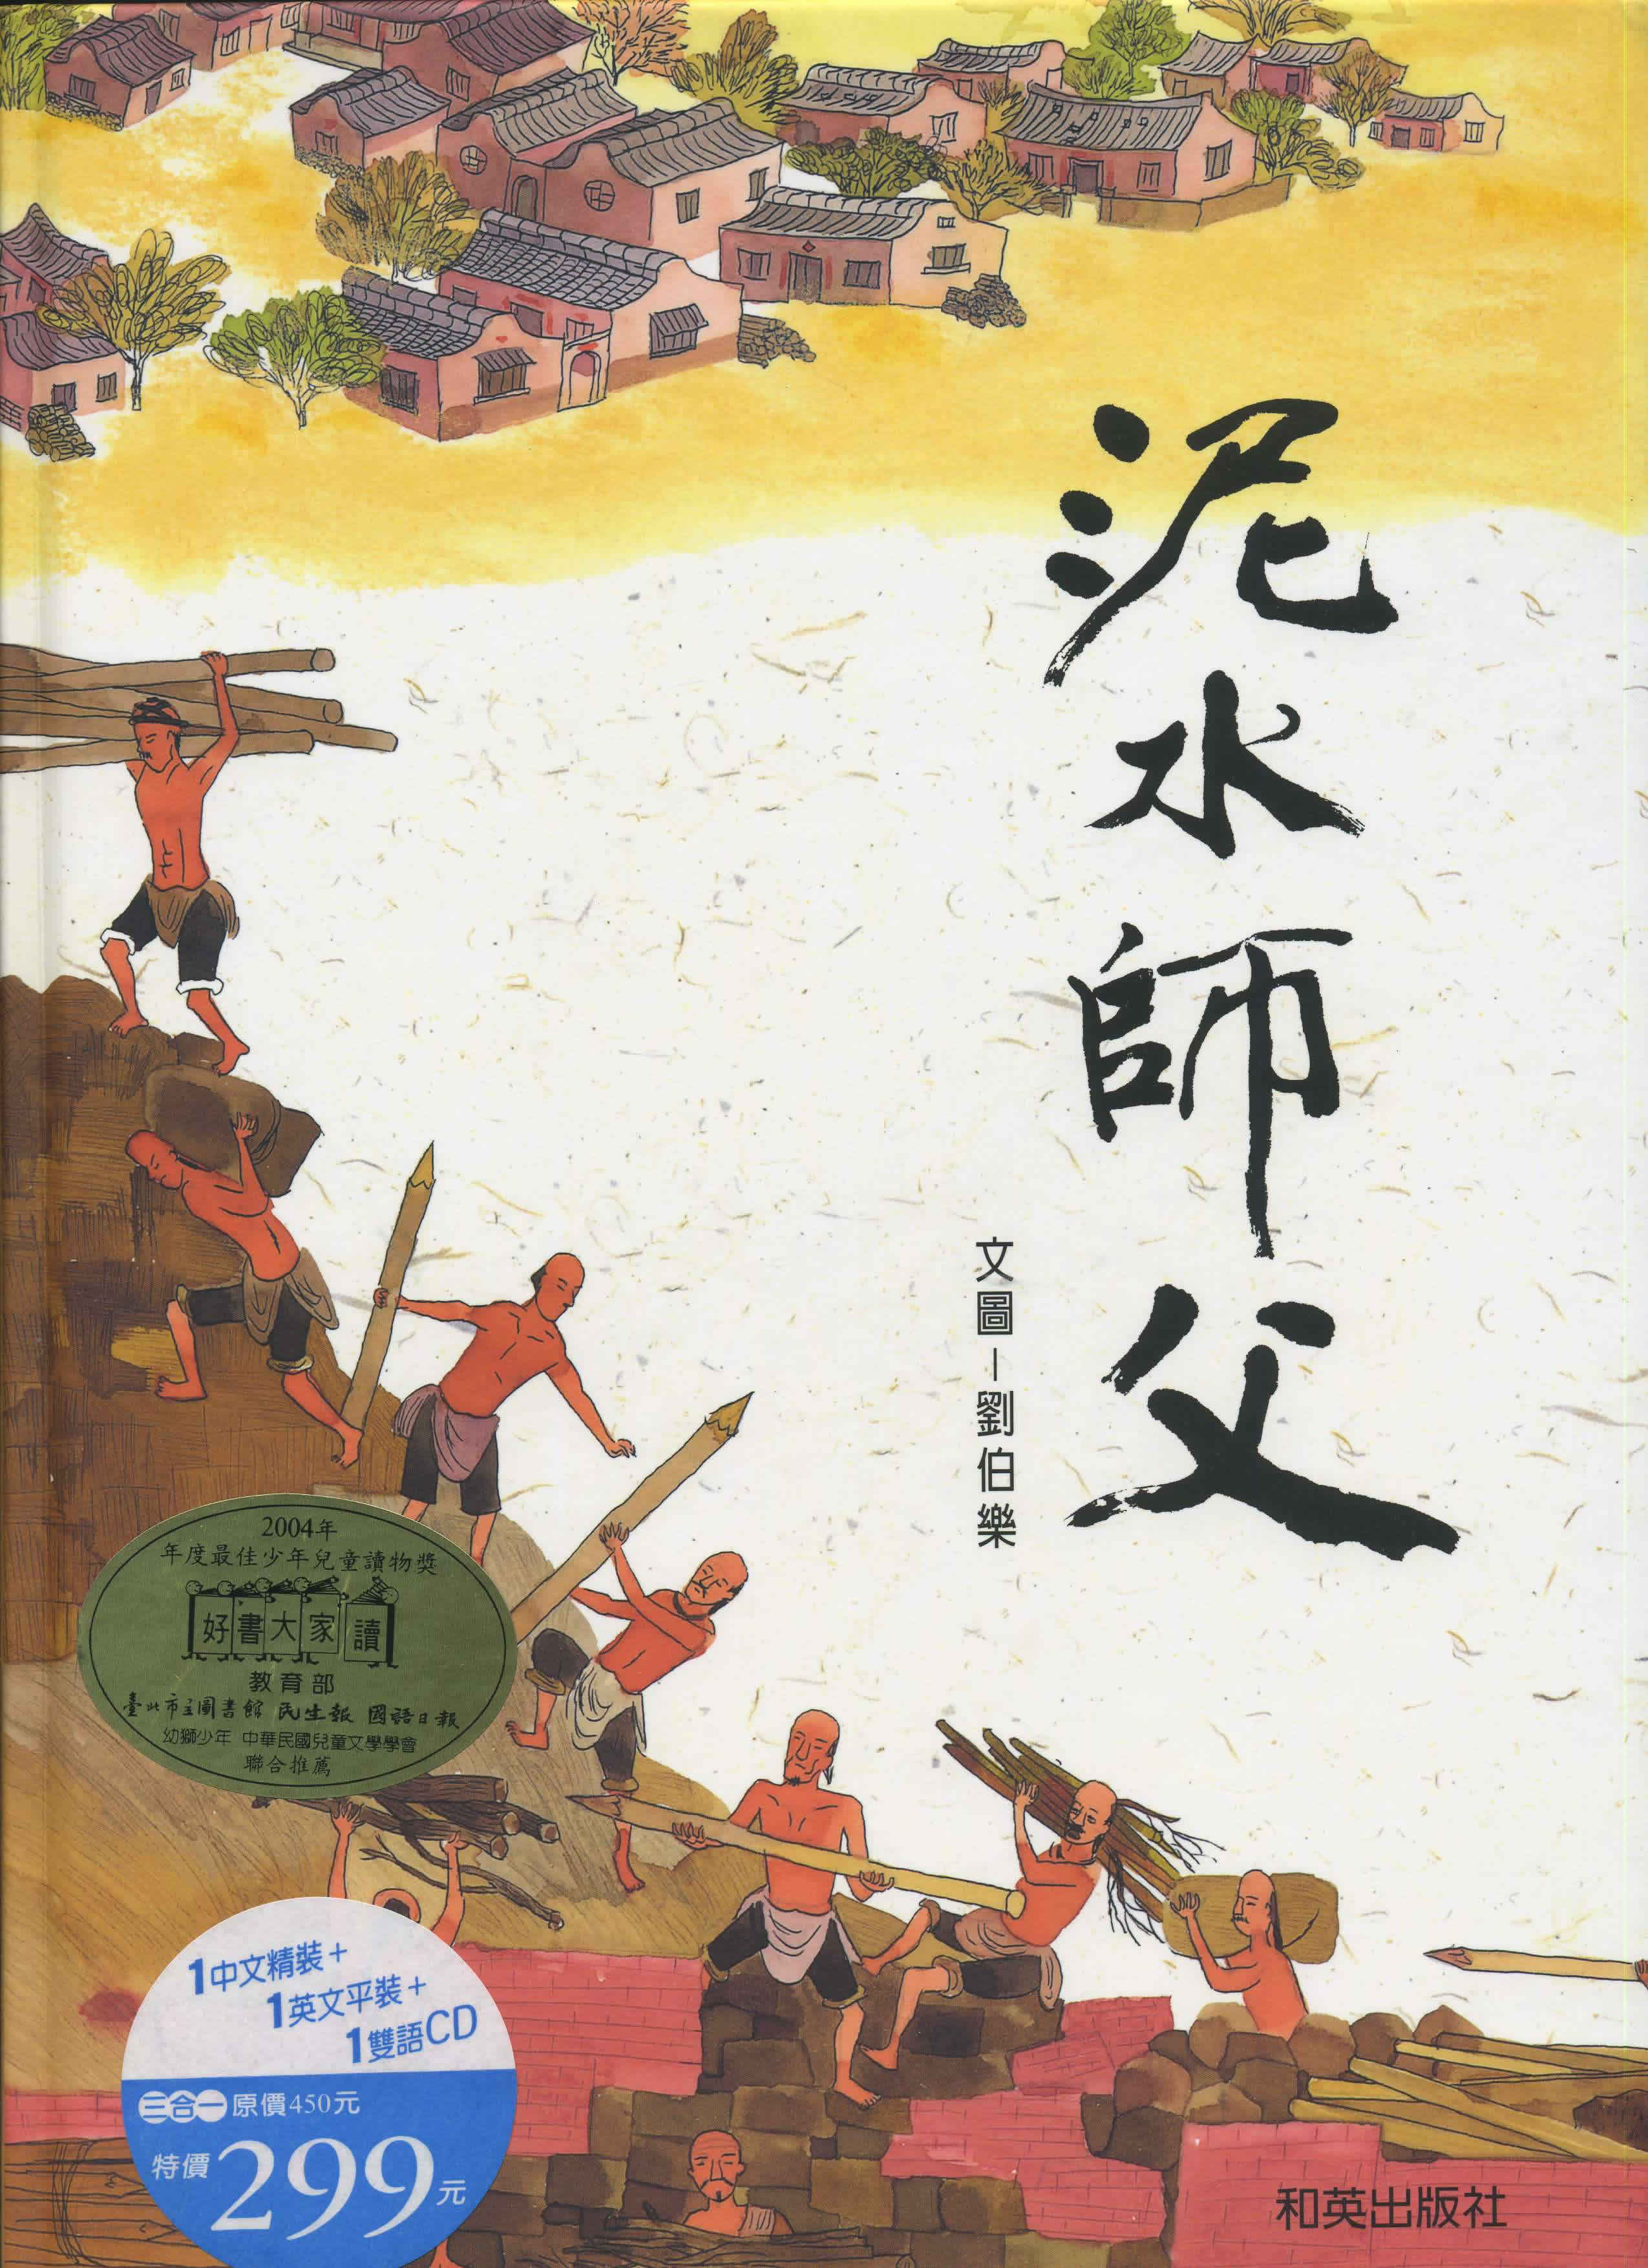 Liu Bole: Nishui Shifu (Master Masonl) (bilingual Chinese-English) (+ CD)<br>ISBN: 986-7942-57-4, 9867942574, 9-789867-942579, 9789867942579